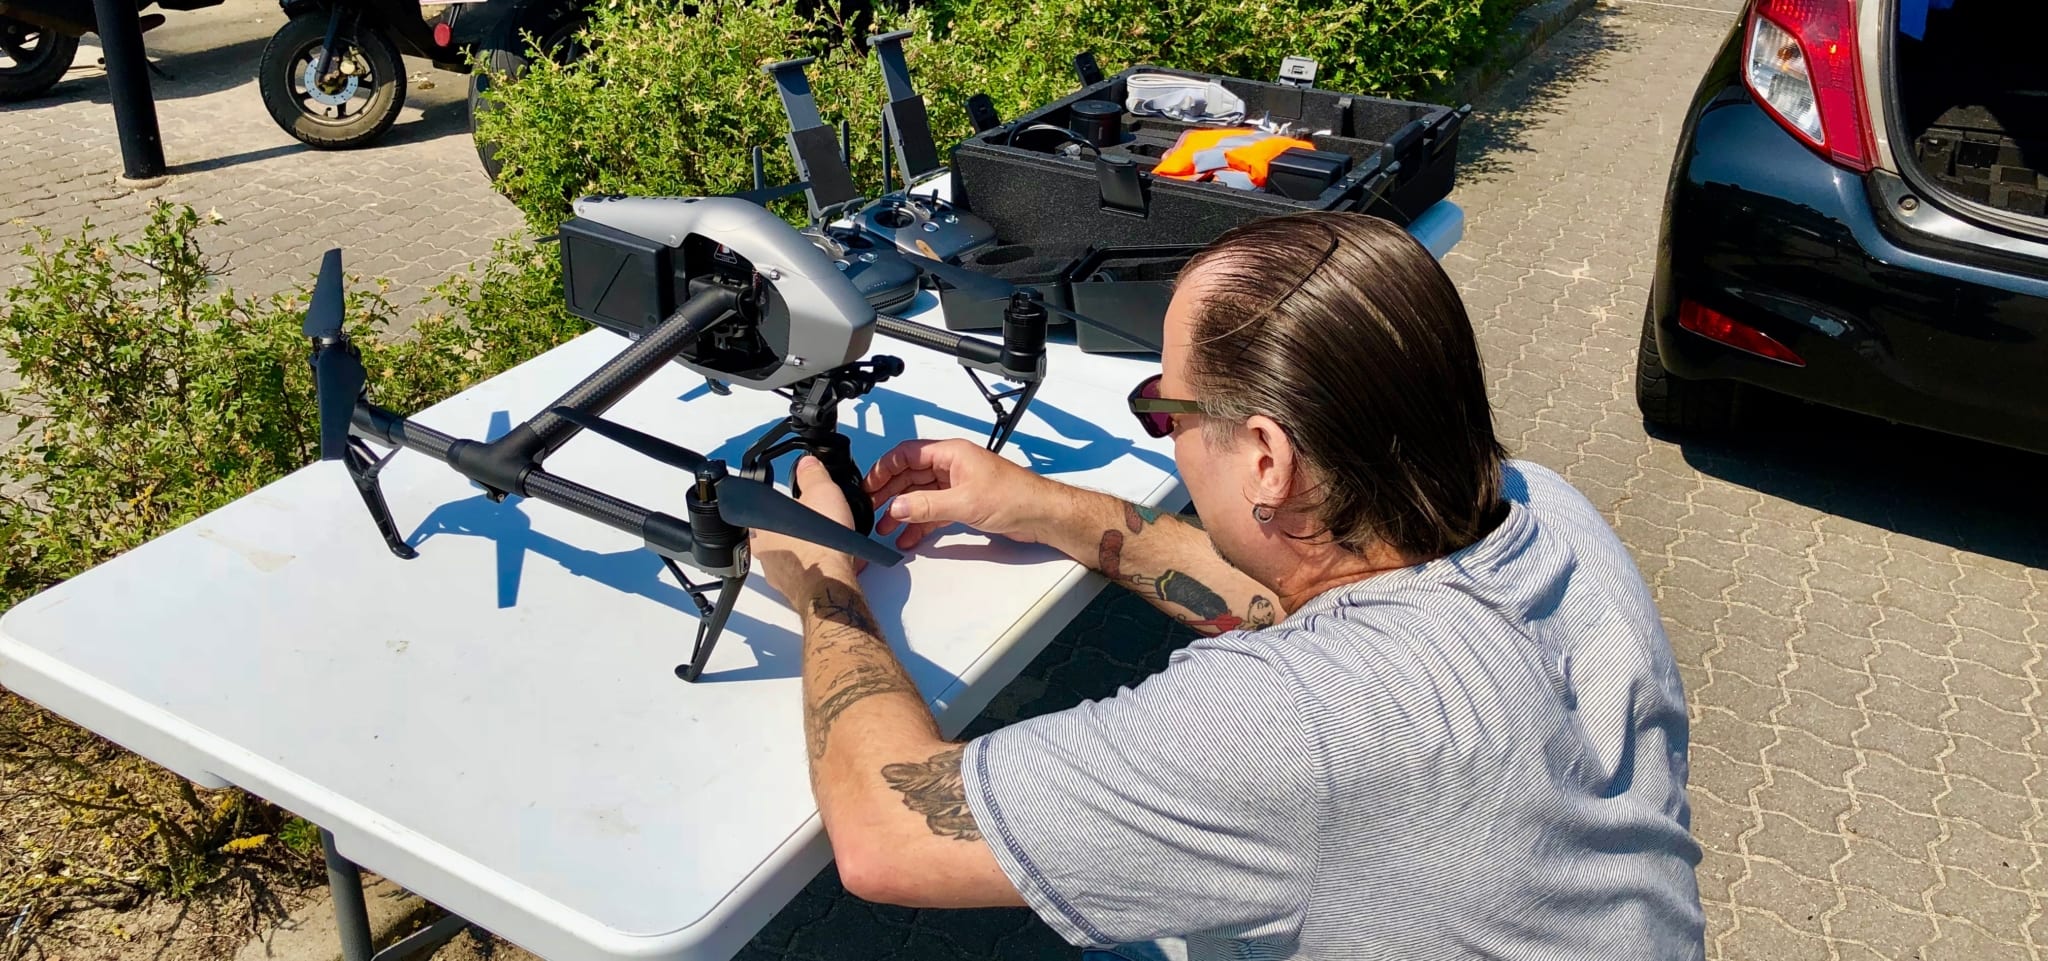 Vi har kombineret vores erfaringer med live videoproduktion og droneflyvning til et nyt produkt, der åbner op for at du kan få Tour De France-helikoptor lignende optagelser med drone fra din event live!